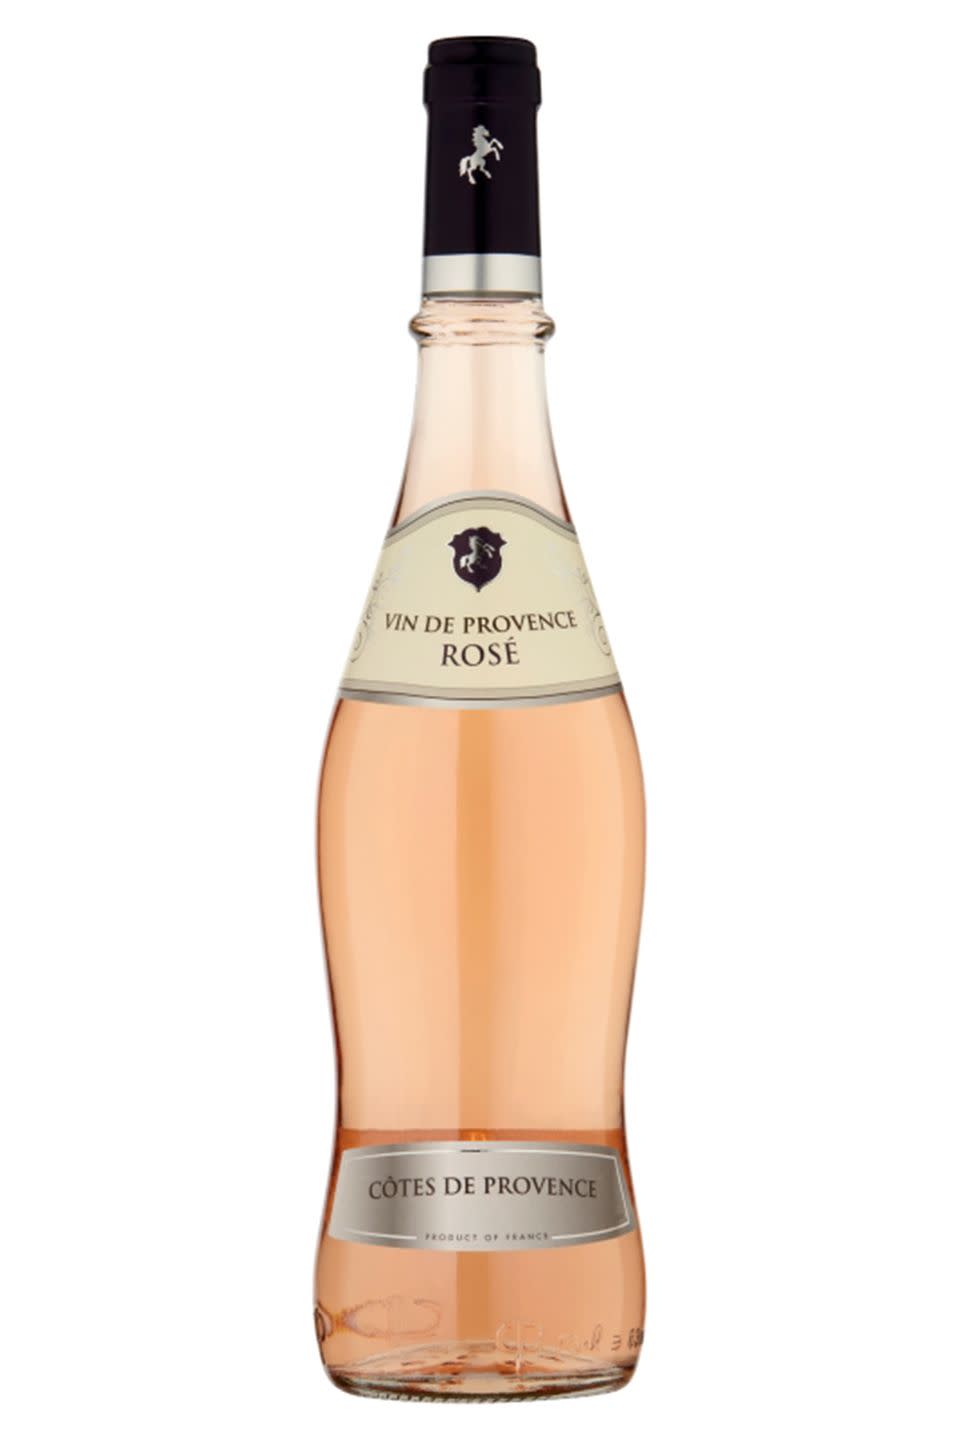 7) Asda Cotes de Provence Rosé 2018